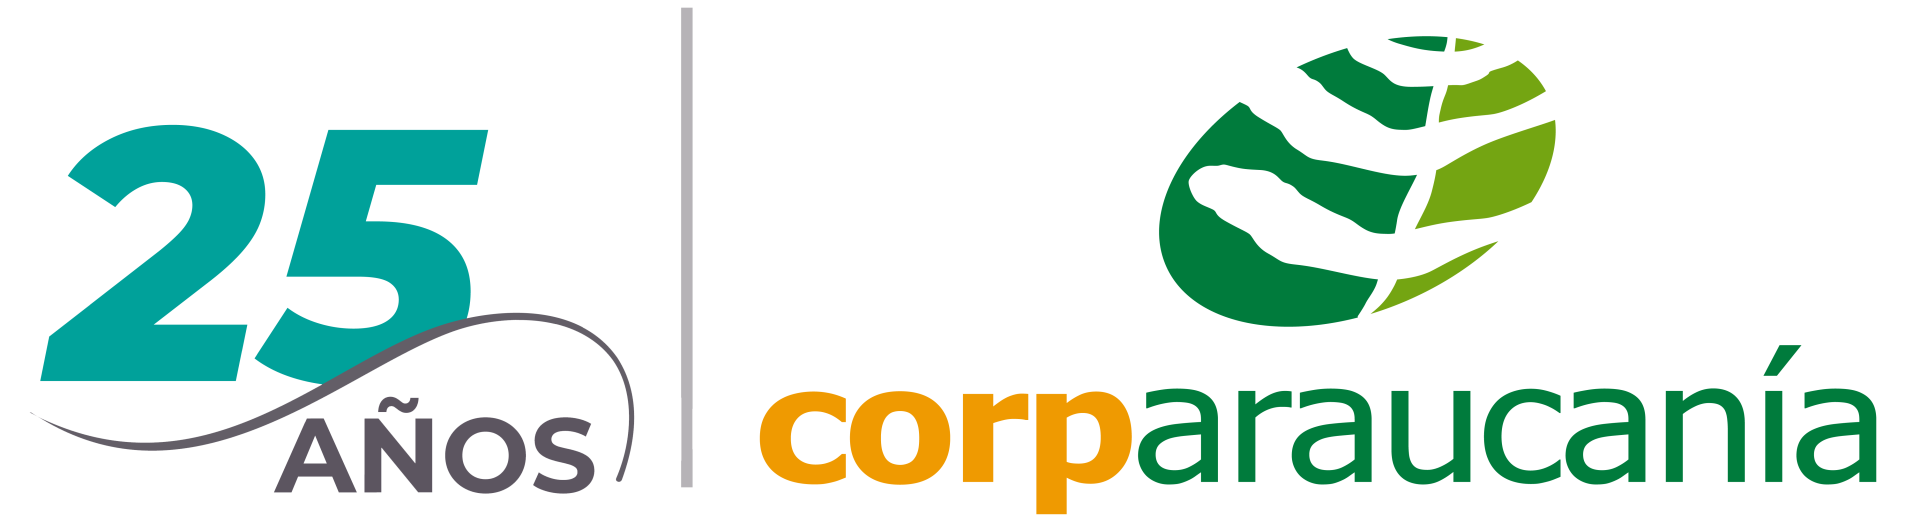 Corparaucania